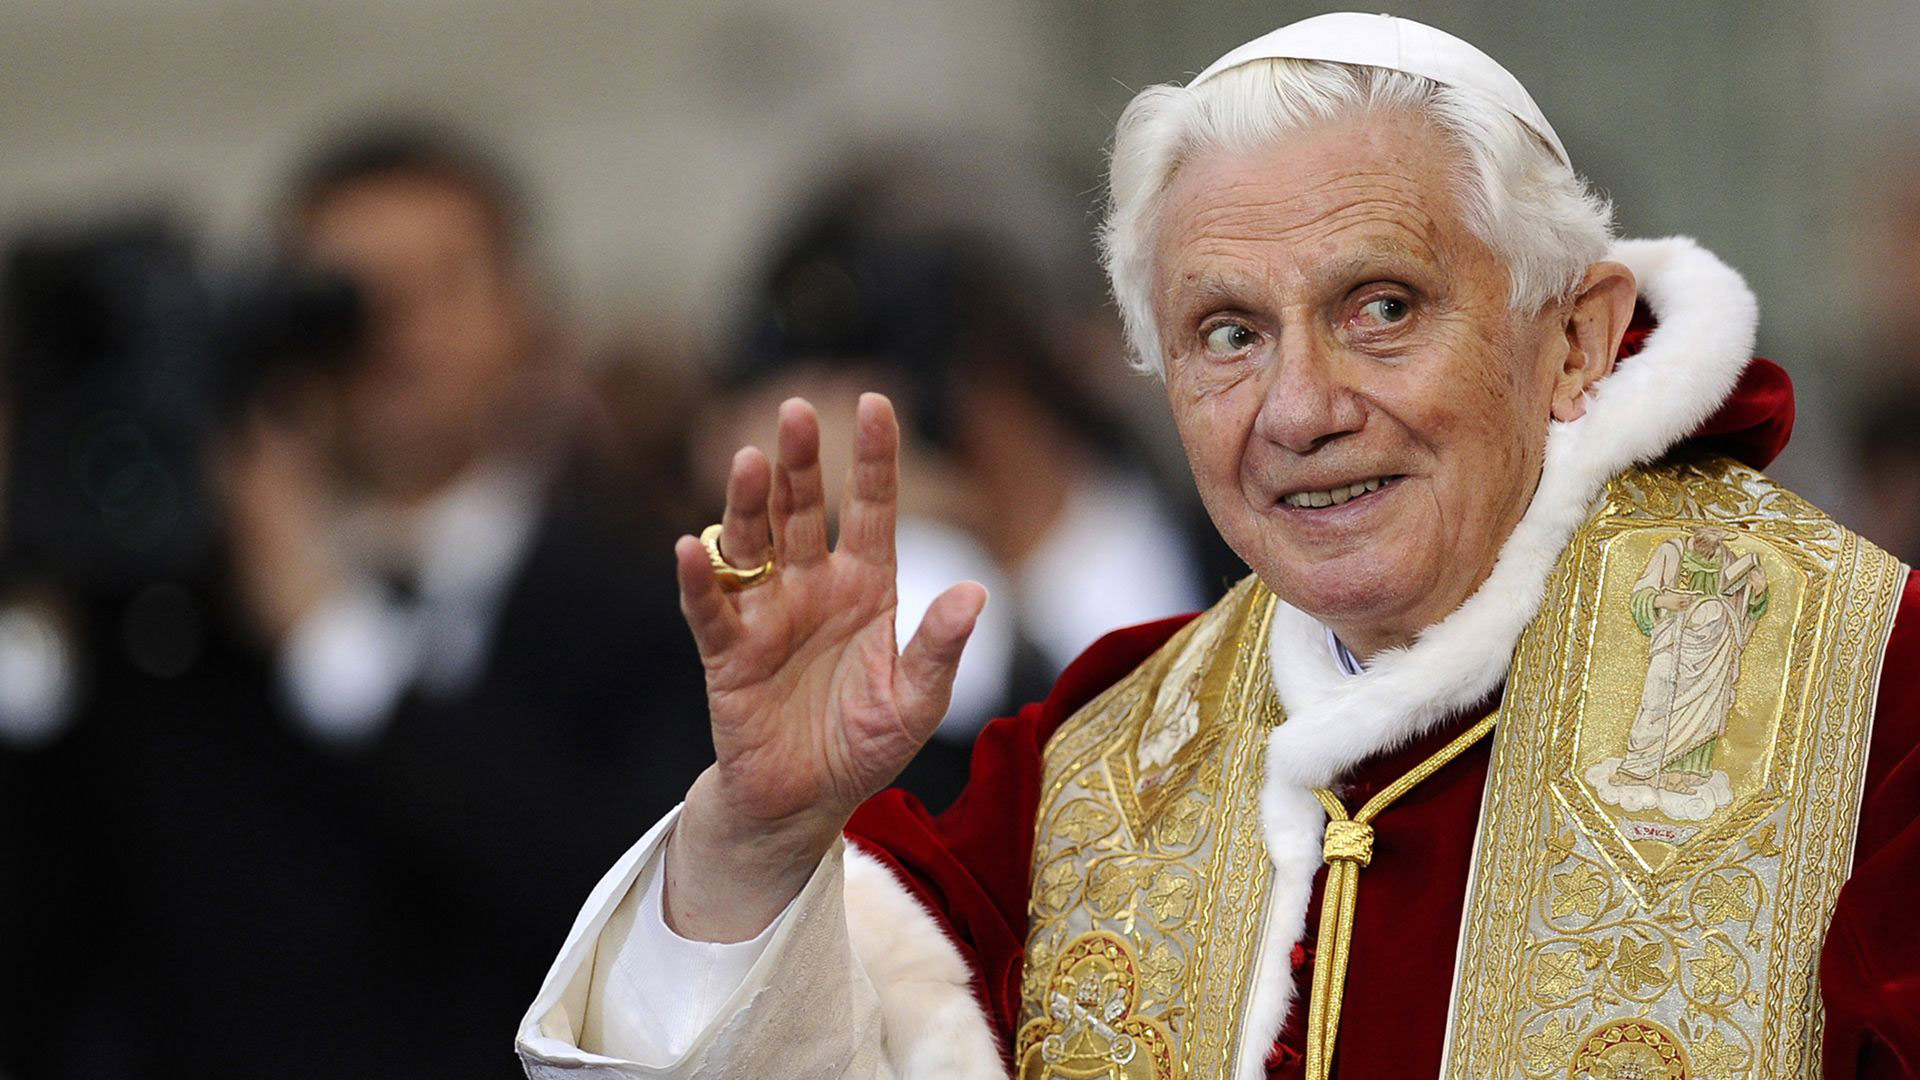 Ratzinger anunció su renuncia al pontificado el 28 de febrero de 2013 por un deterioro de sus capacidades físicas y mentales. Tenía 85 años en ese momento